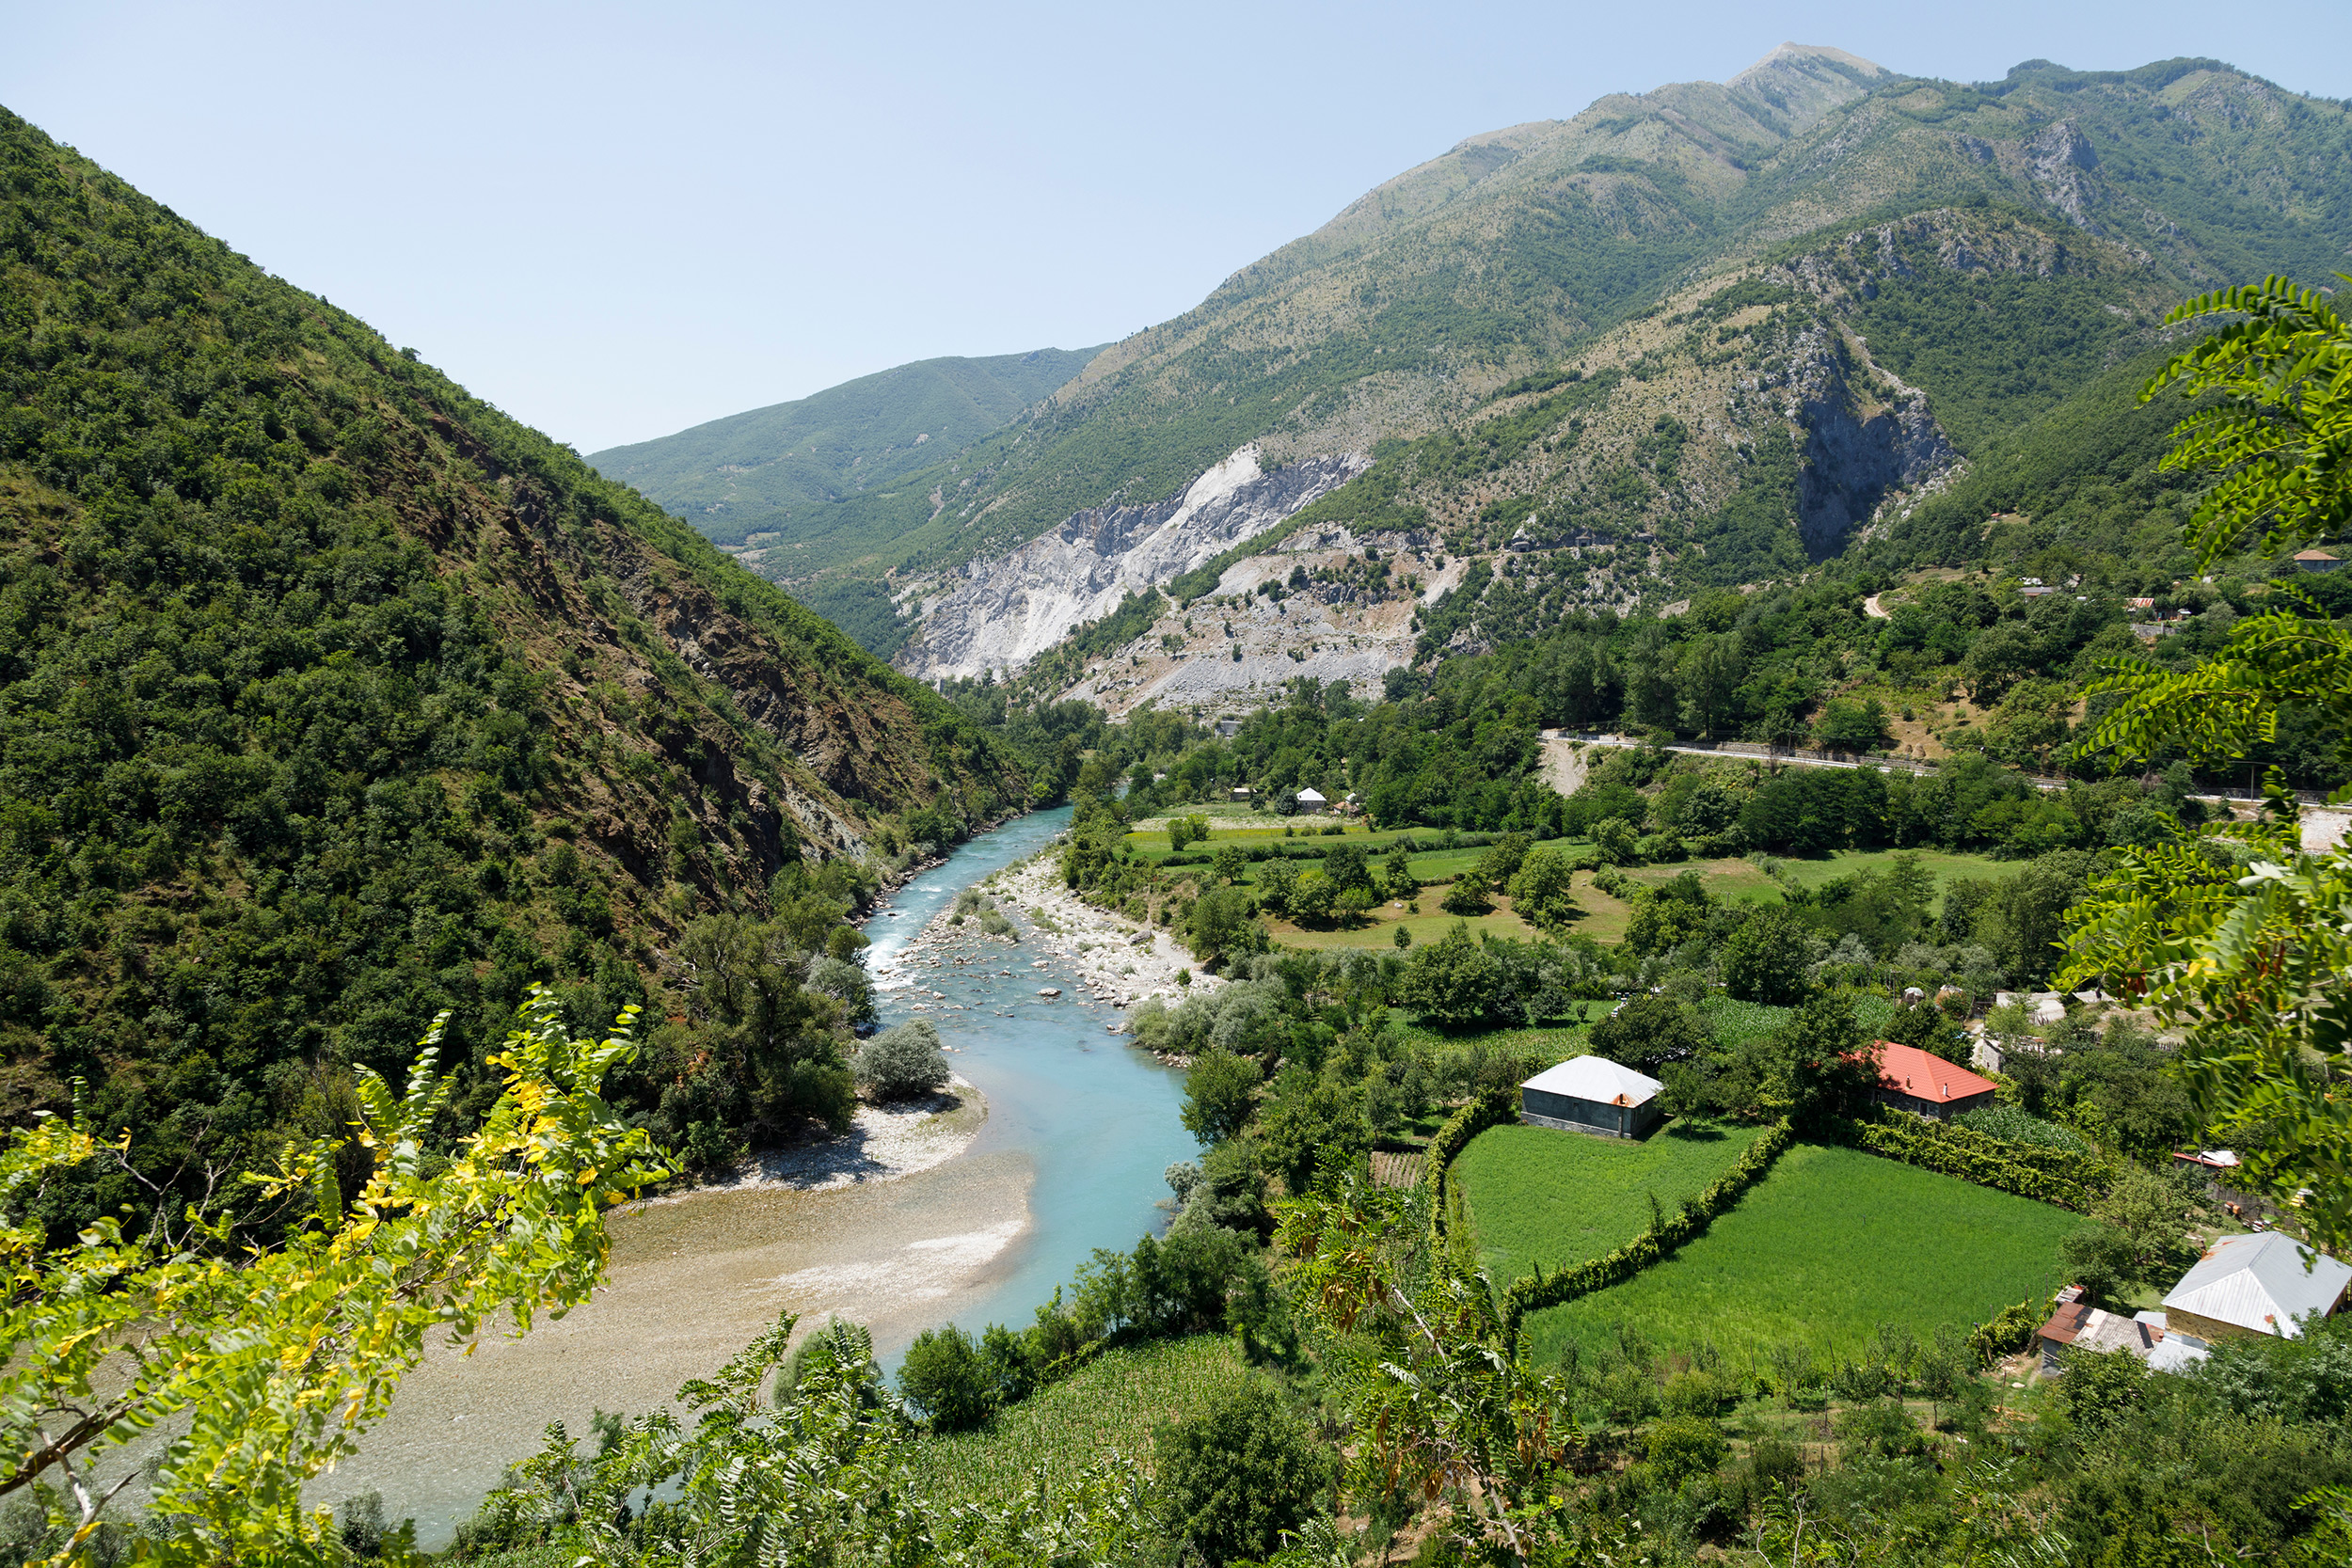 Camping albanien am meer